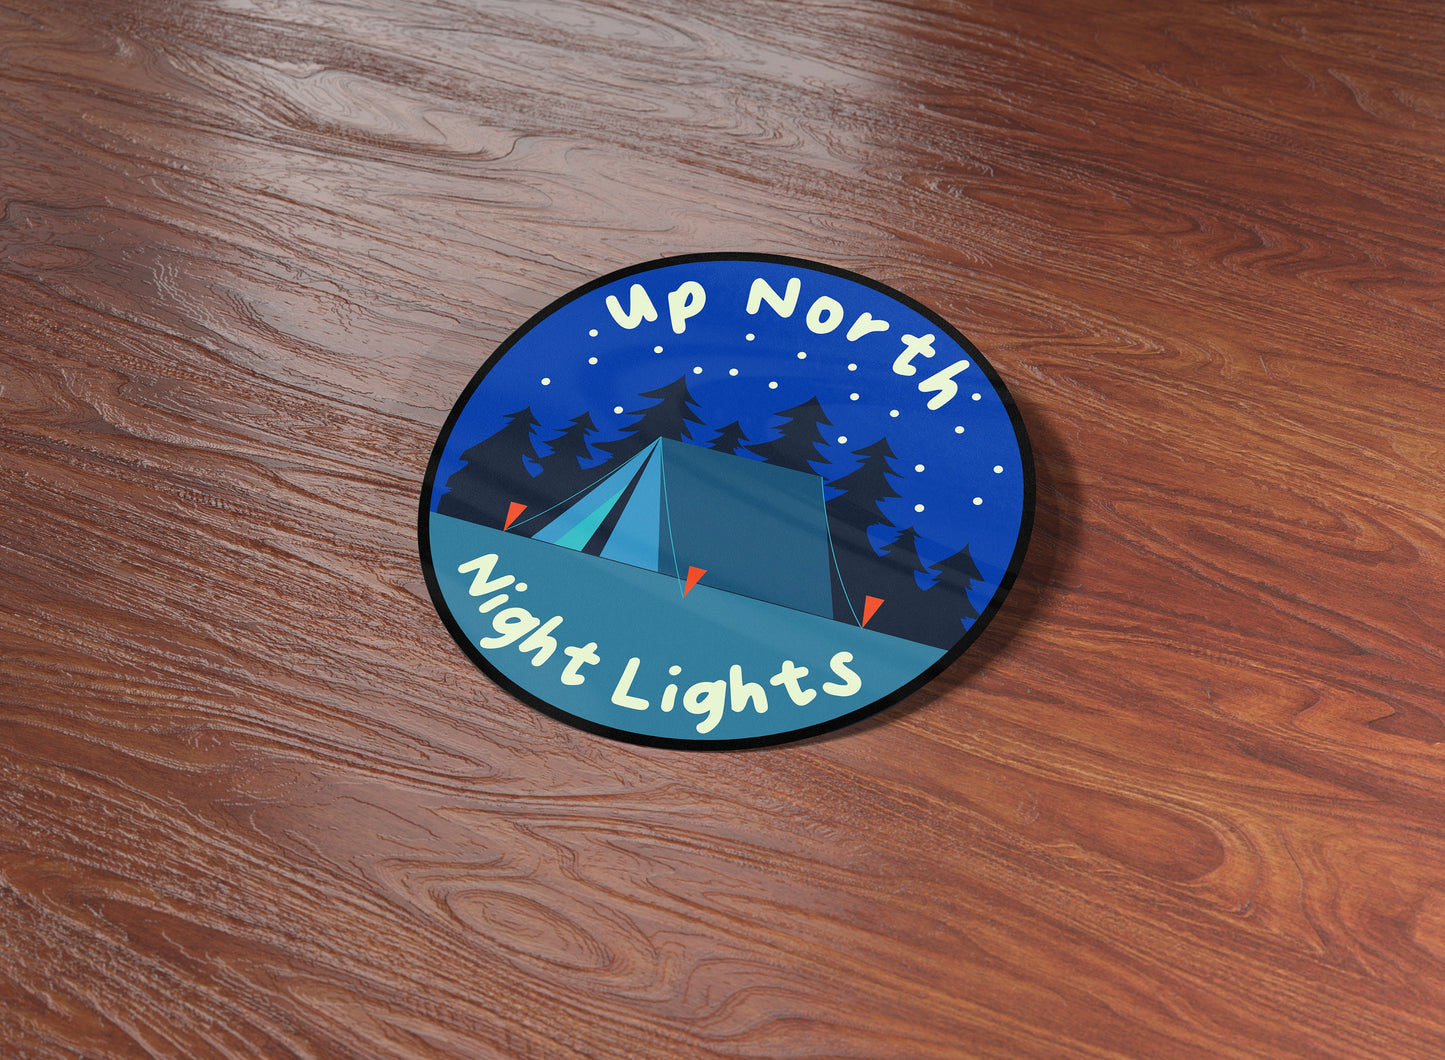 Up North Night Lights Sticker